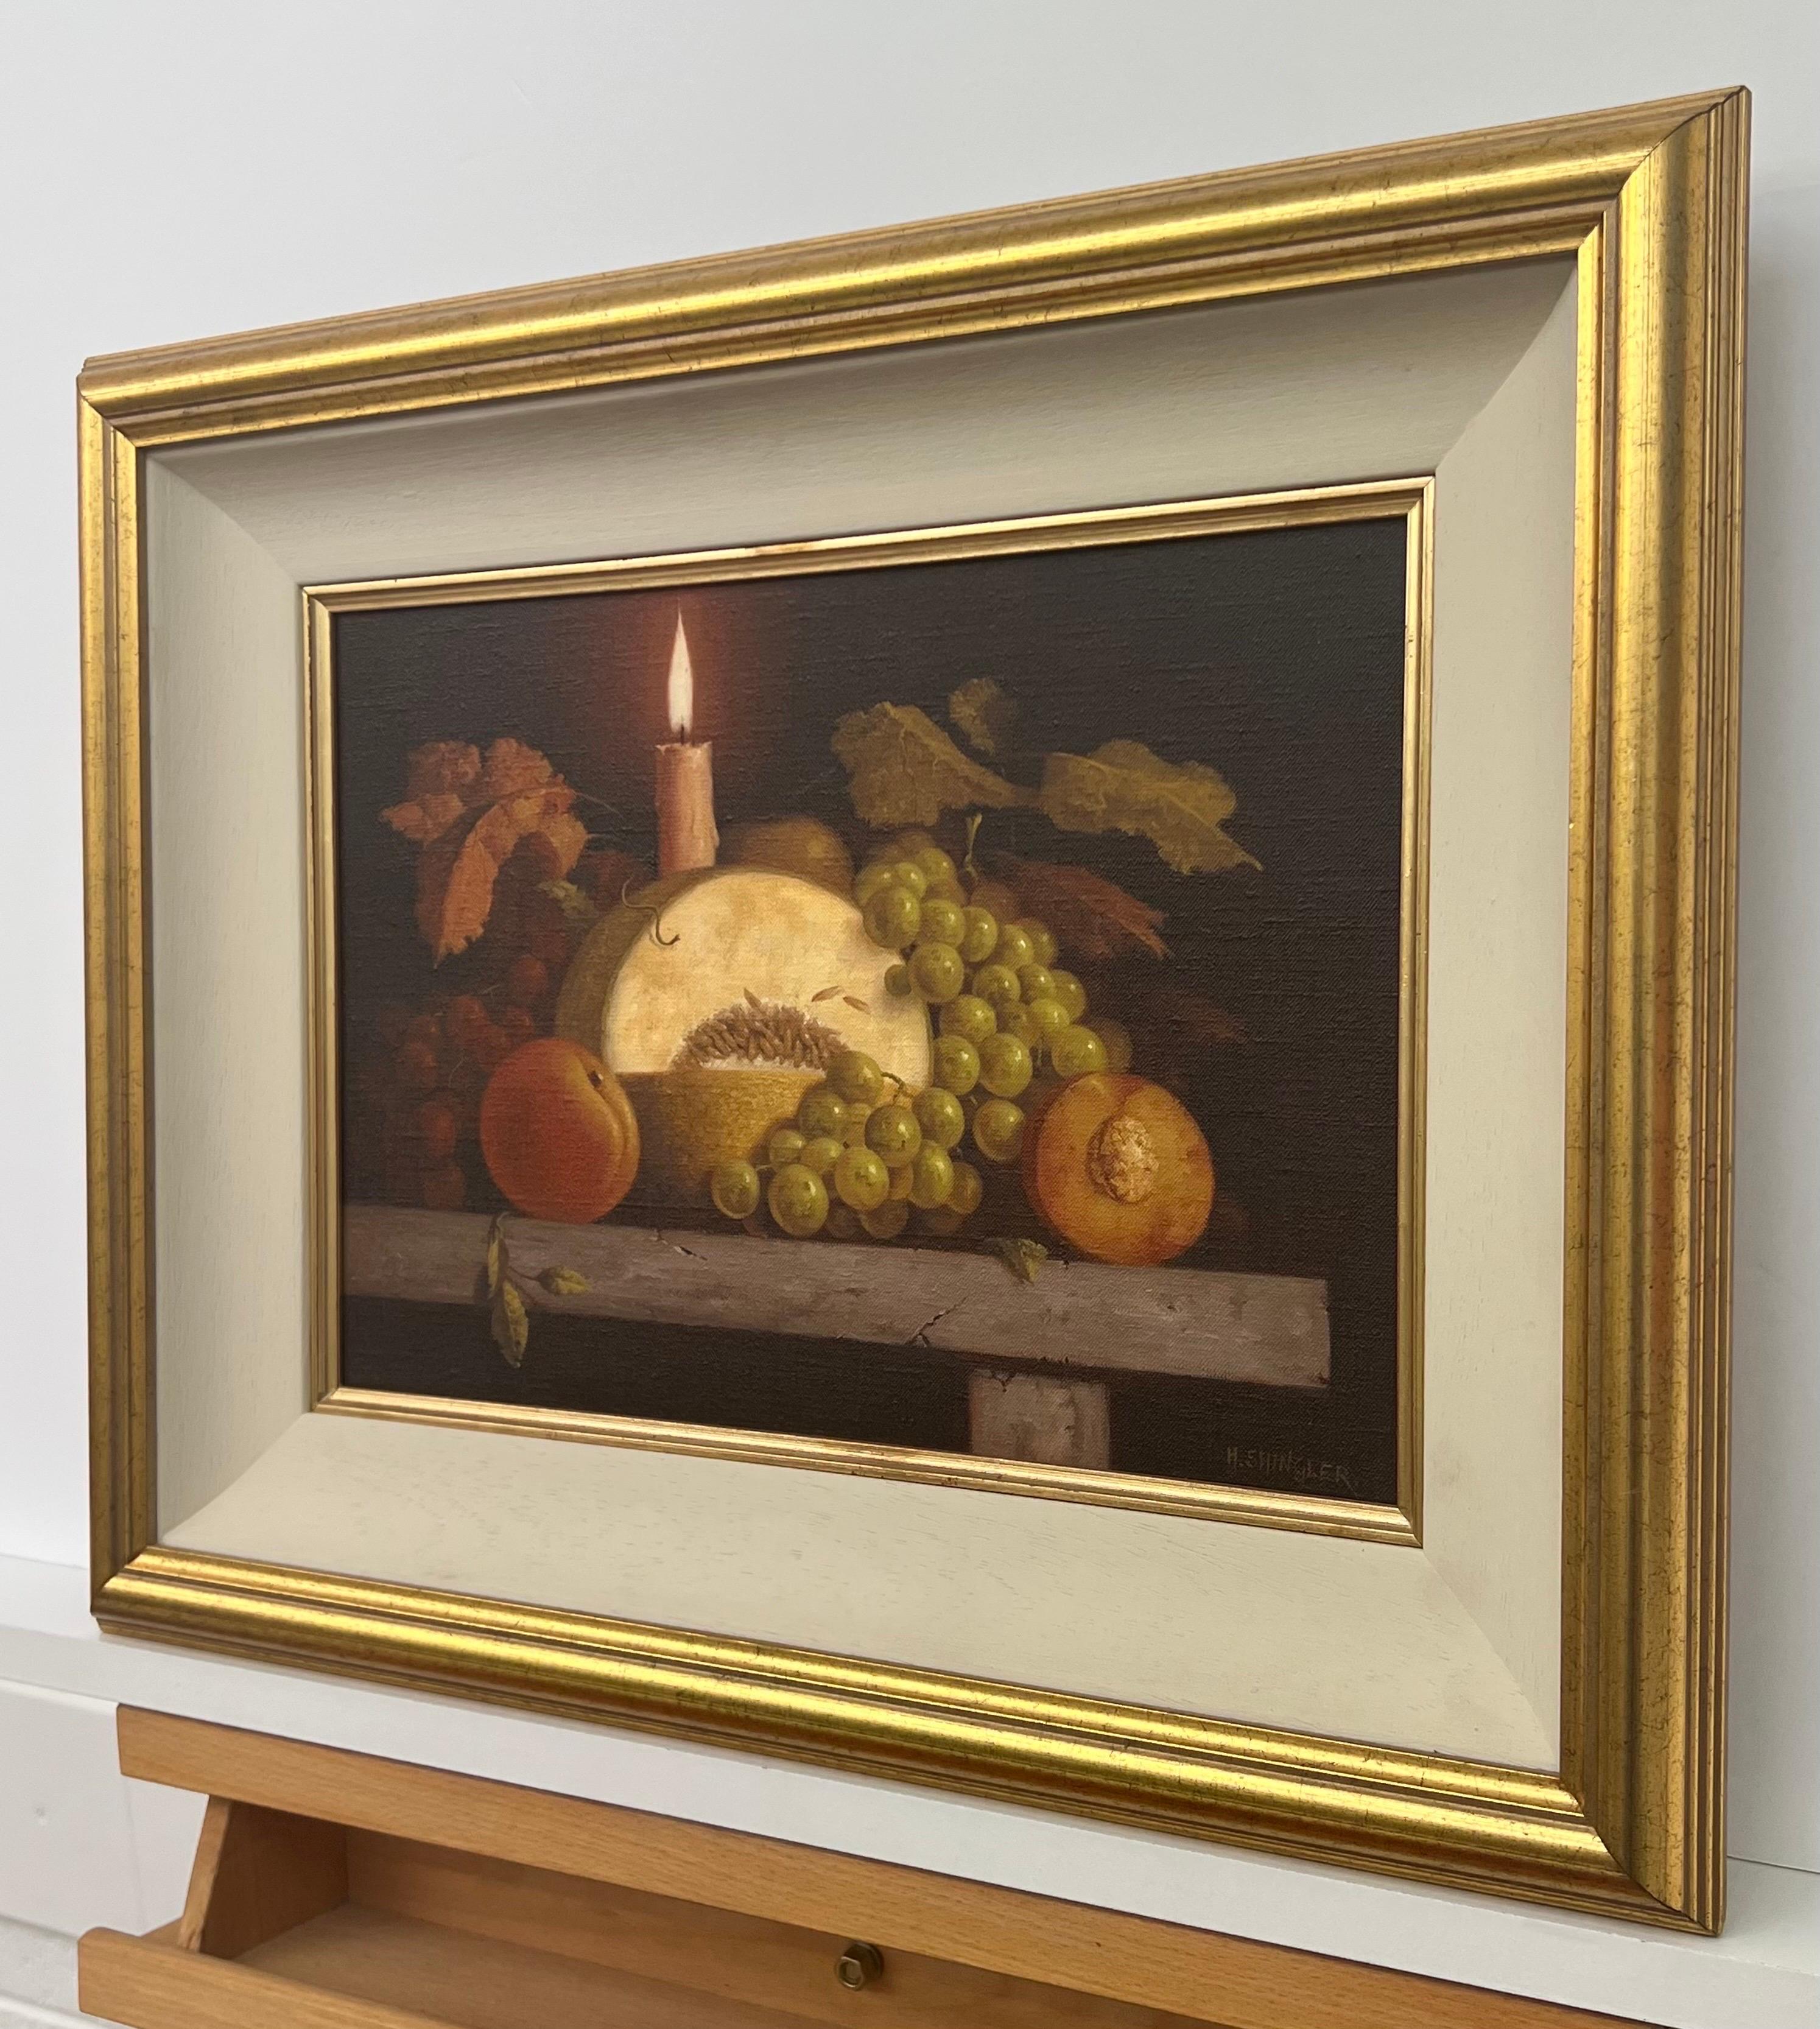 Nature morte d'intérieur traditionnelle à l'huile avec fruits et bougie par l'artiste britannique du 20e siècle, Howard Shingler. Cet original à l'ambiance chaleureuse est présenté dans un cadre doré avec un insert blanc cassé.

L'œuvre d'art mesure